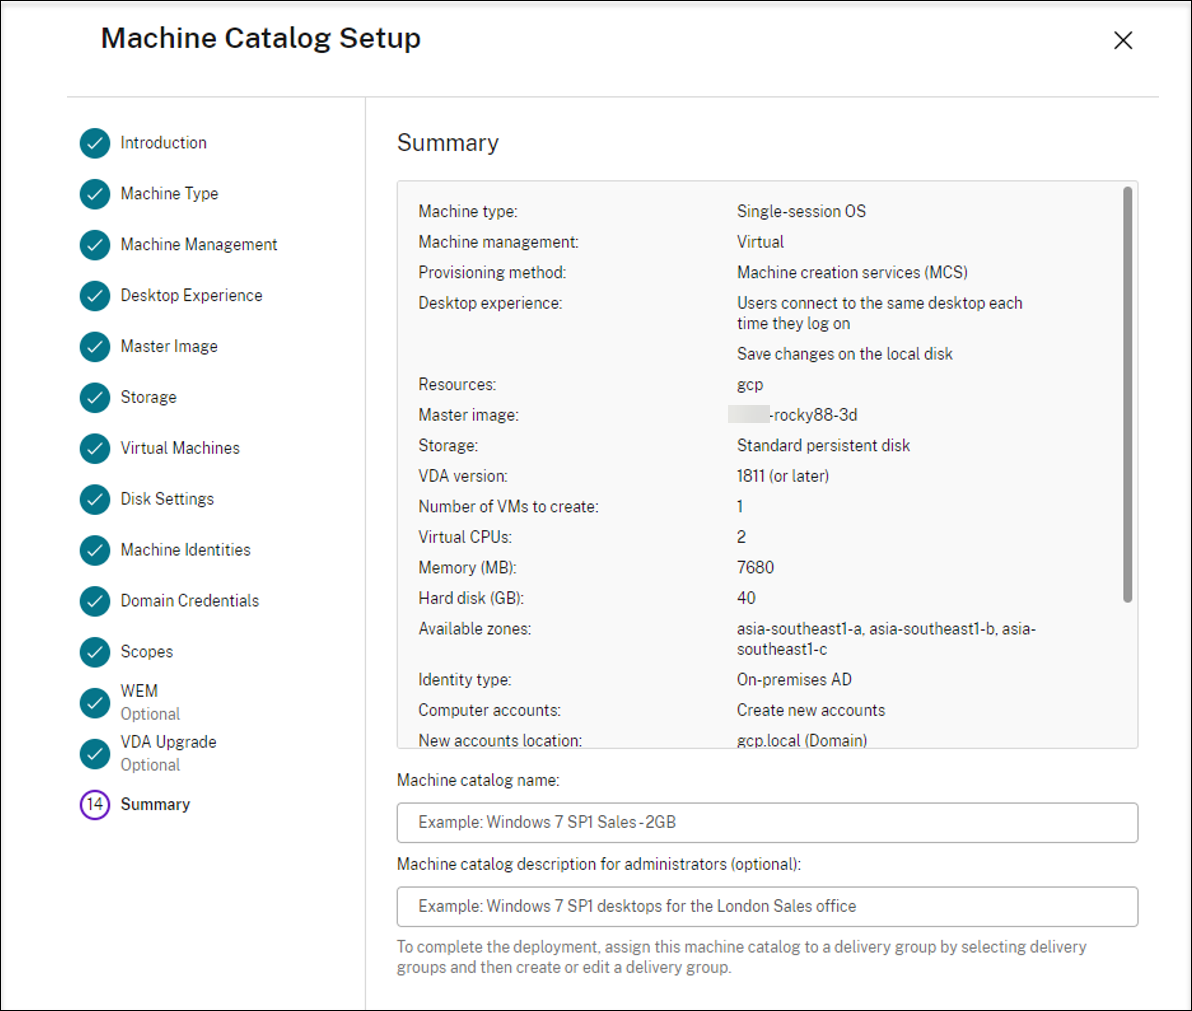 Machine catalog setup summary